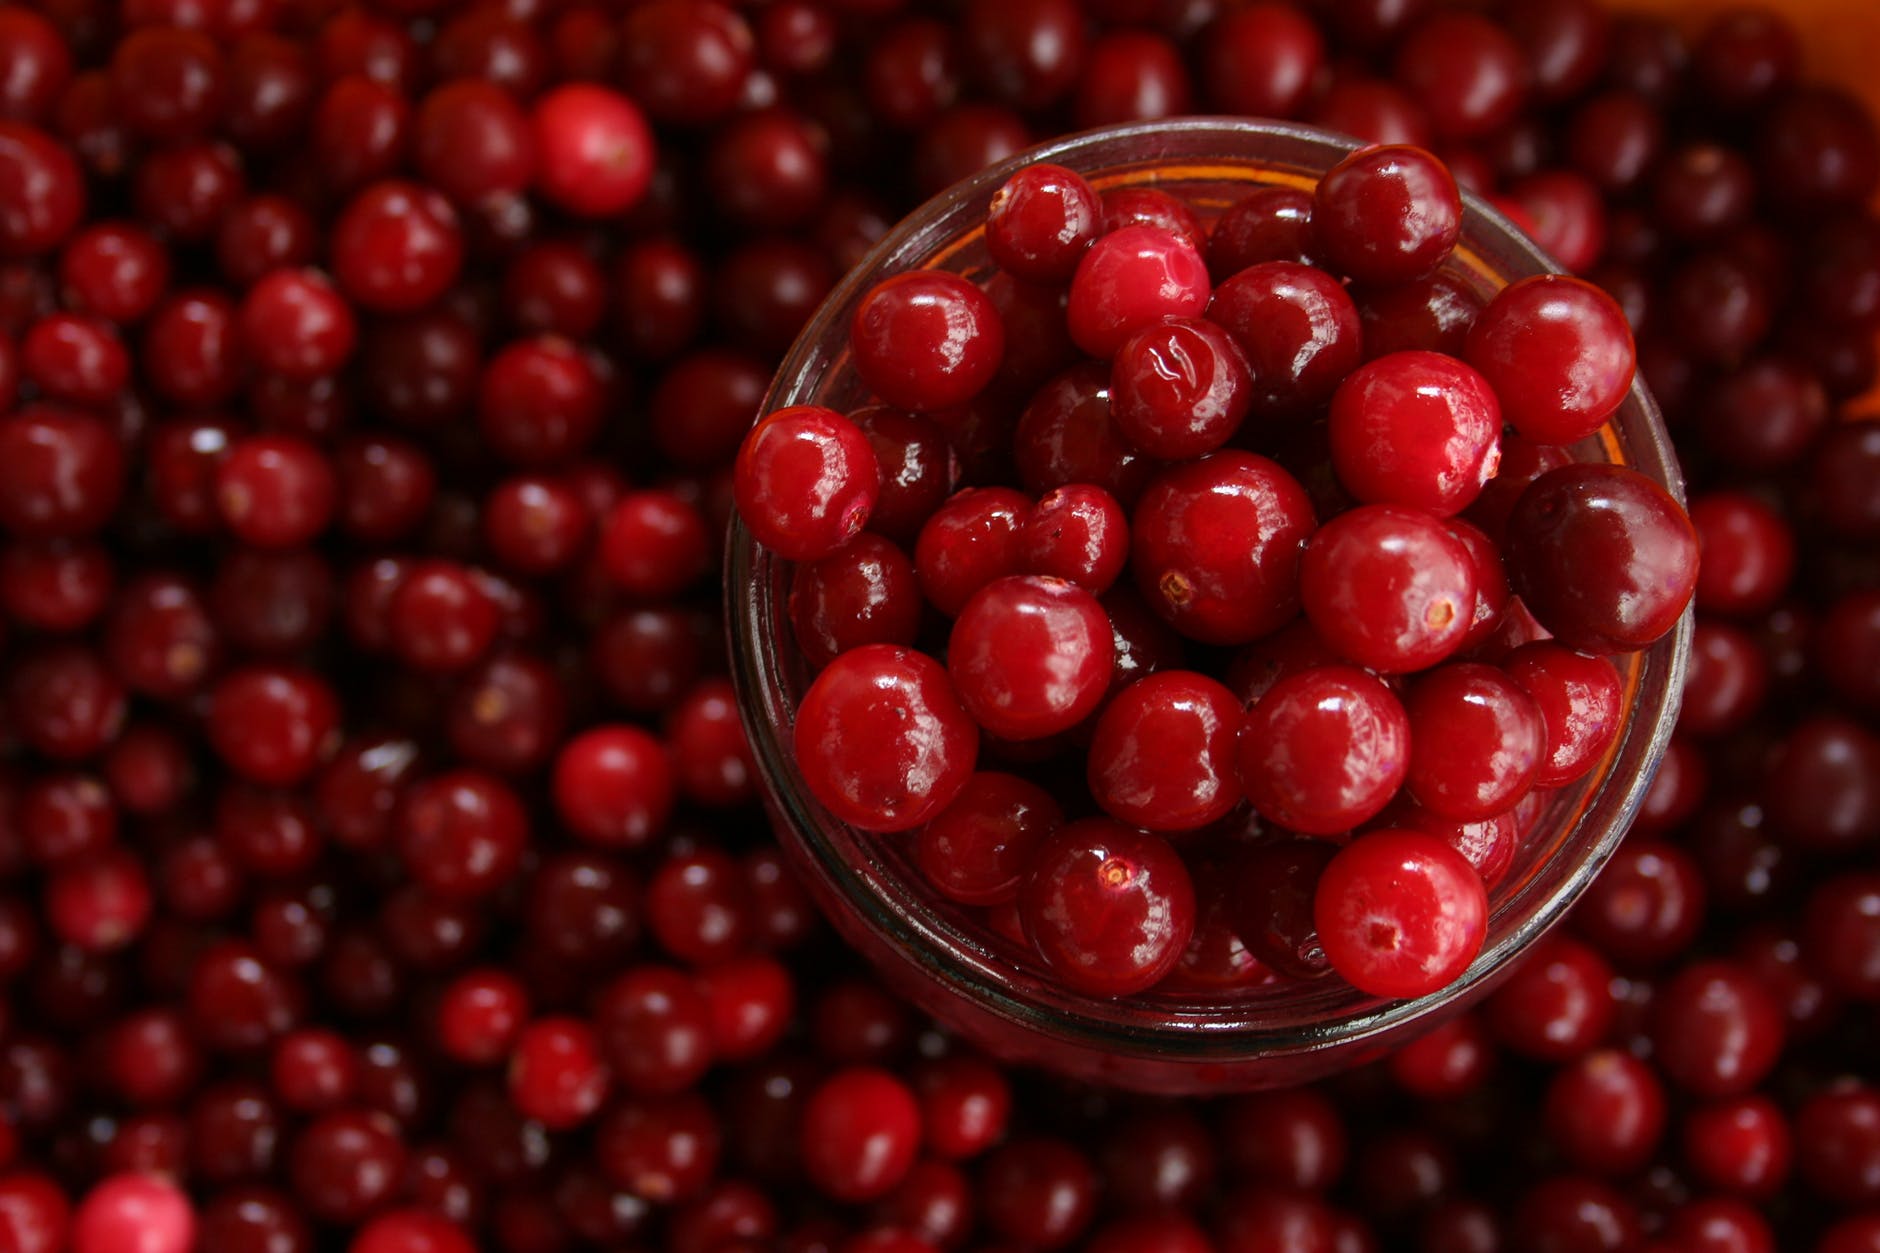 health-benefits-of-cranberry-juice